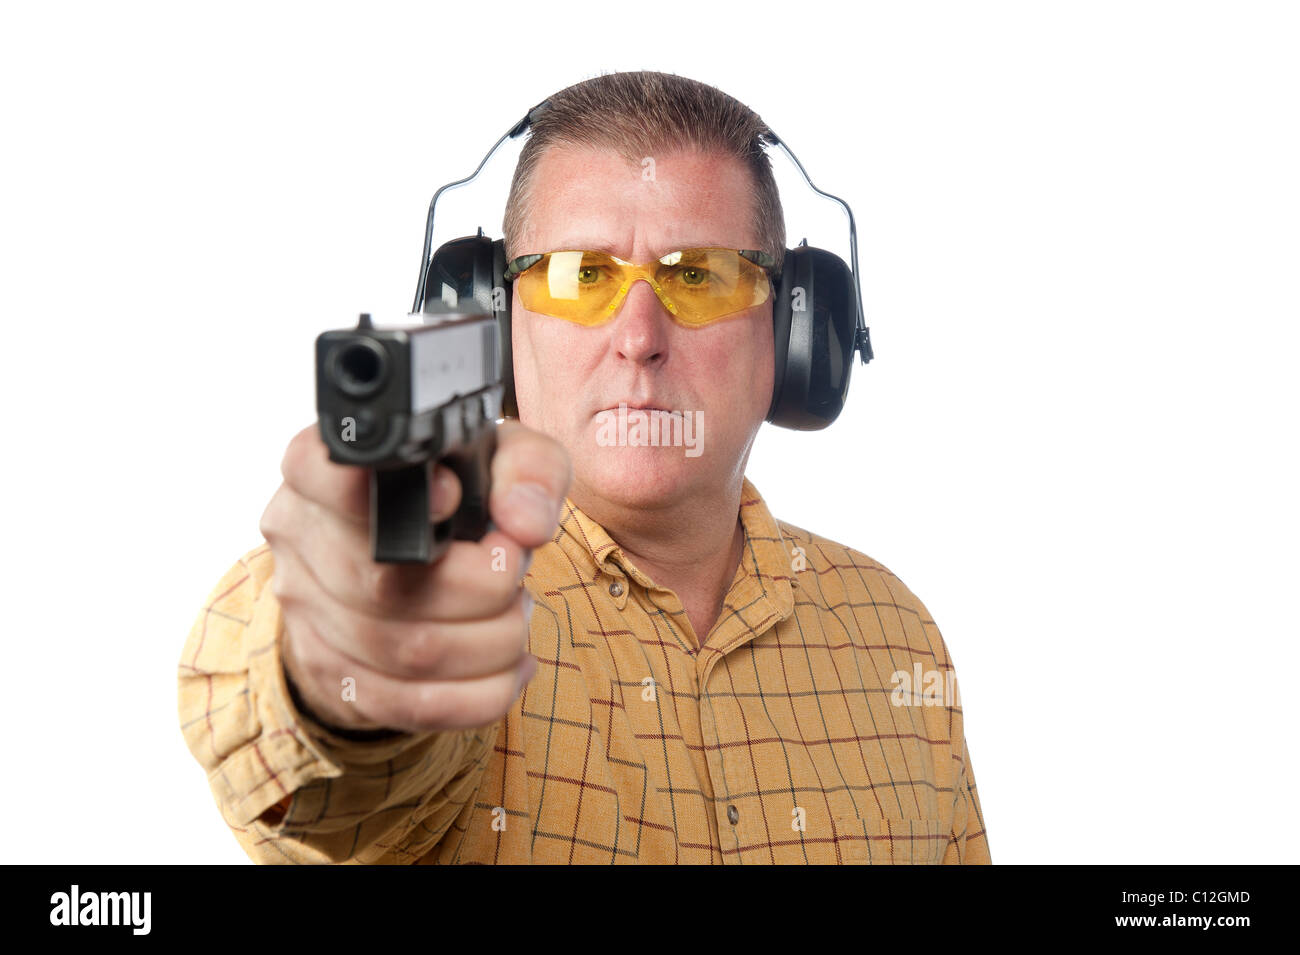 Un homme vise un pistolet tout en portant un équipement de sécurité tels que les lunettes de sécurité et de protection de l'ouïe. Banque D'Images